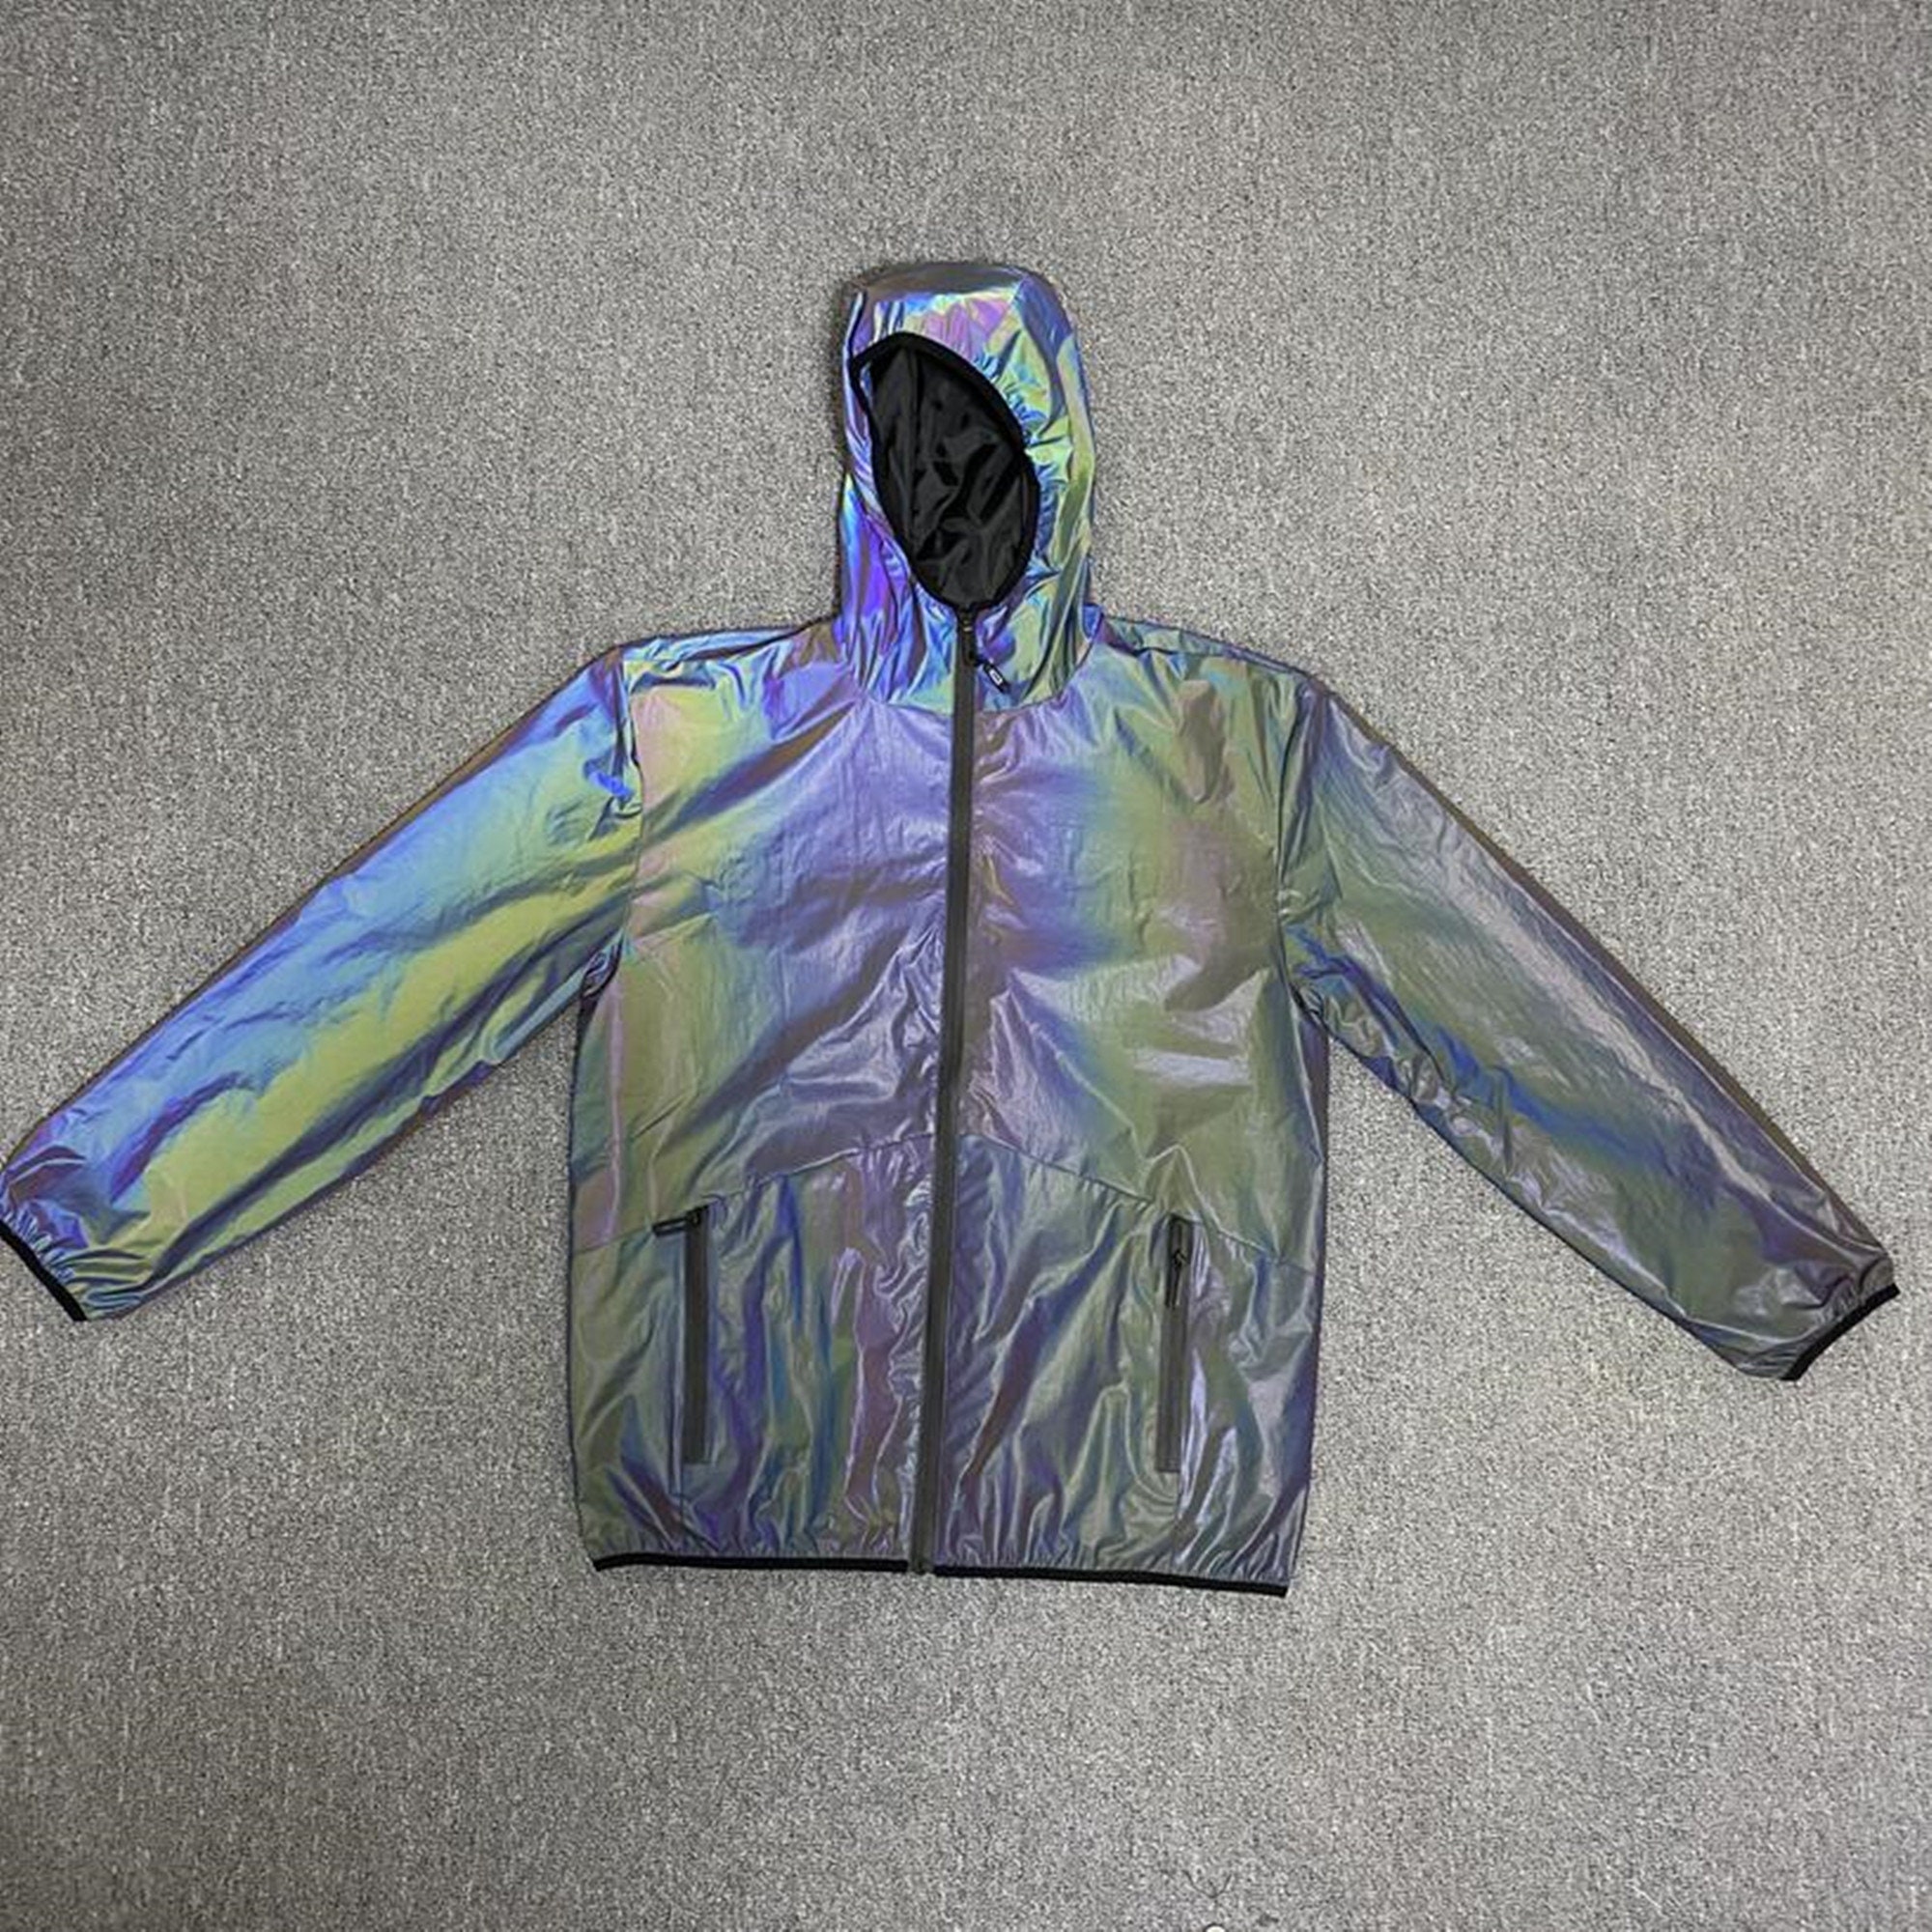 Unisex Holographic Reflektierende Jacke, Rainbow Rave Wear Mantel, Reflektierende  Oberbekleidung Trainingsjacke Rave Outfit -  Österreich